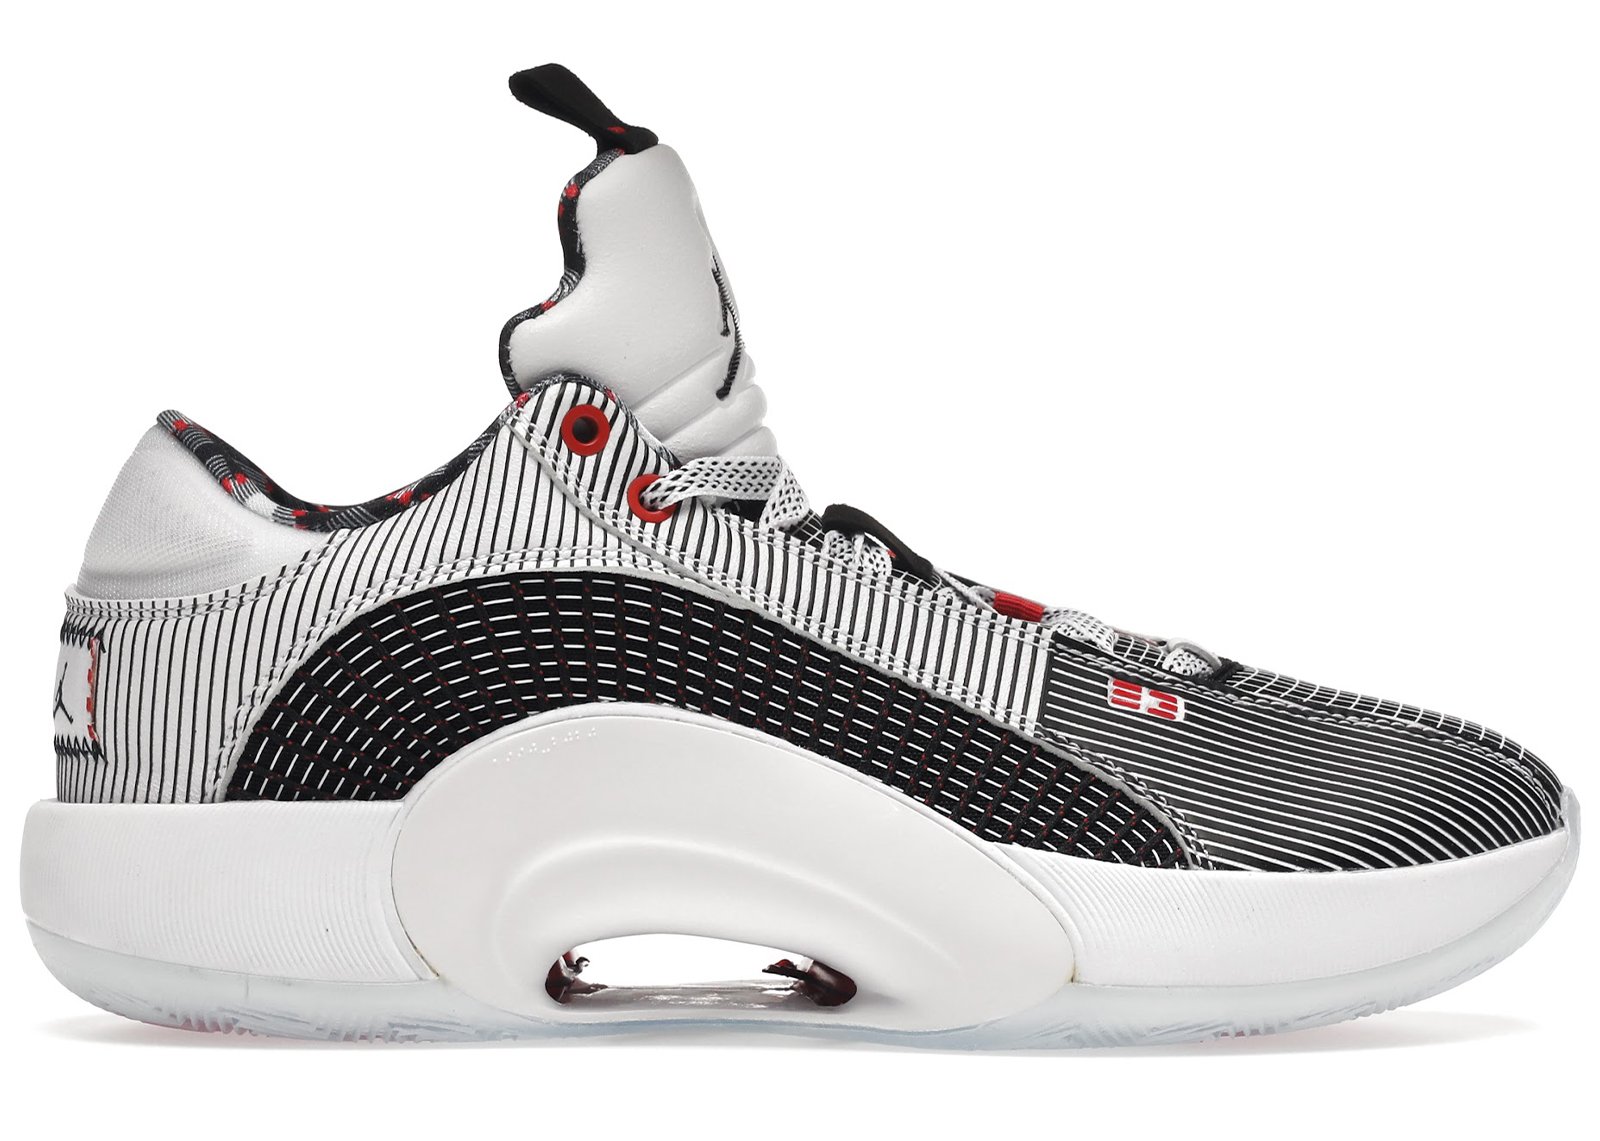 Jordan 35 Low Quai 54 (2021) sneakers